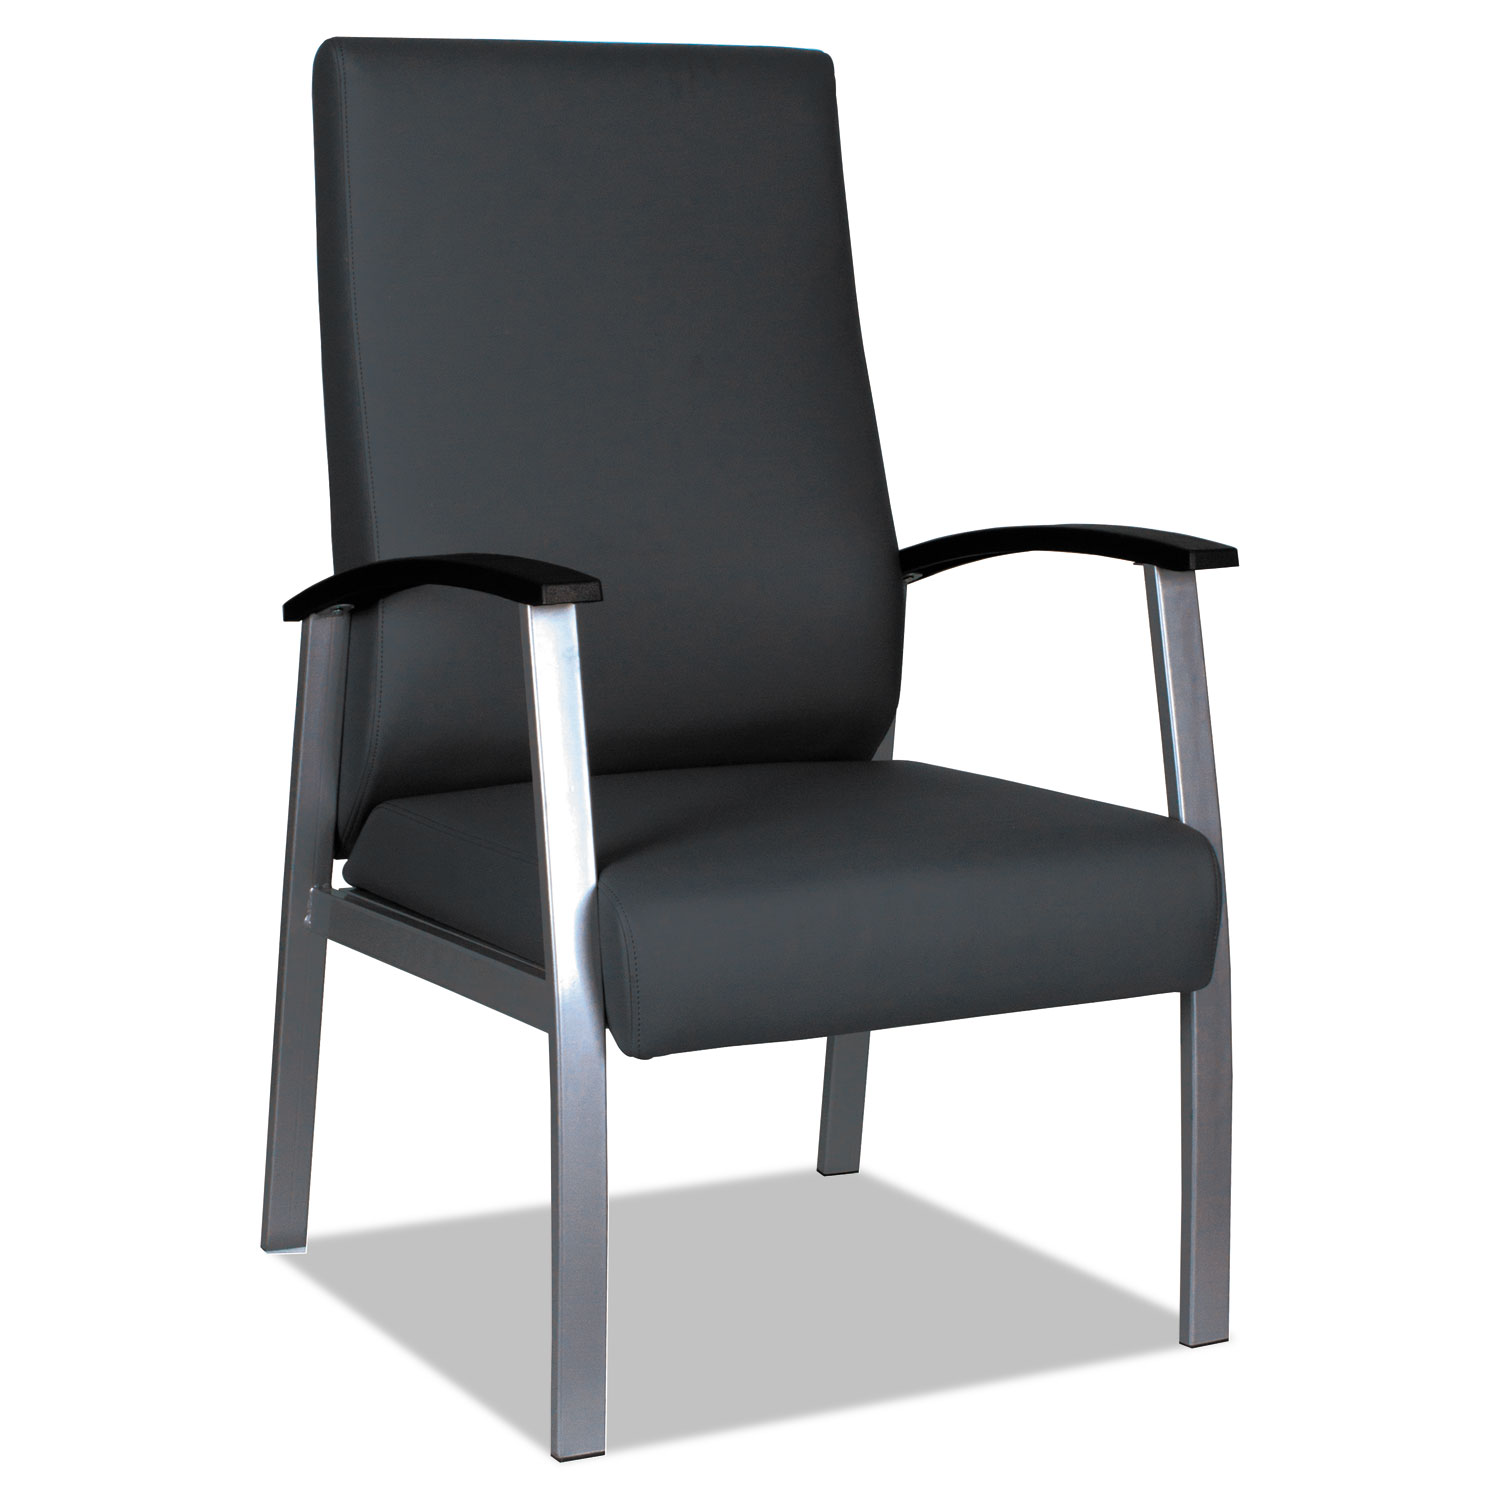  Alera ALEML2419 Alera metaLounge Series High-Back Guest Chair, 24.6'' x 26.96'' x 42.91'', Black Seat/Black Back, Silver Base (ALEML2419) 